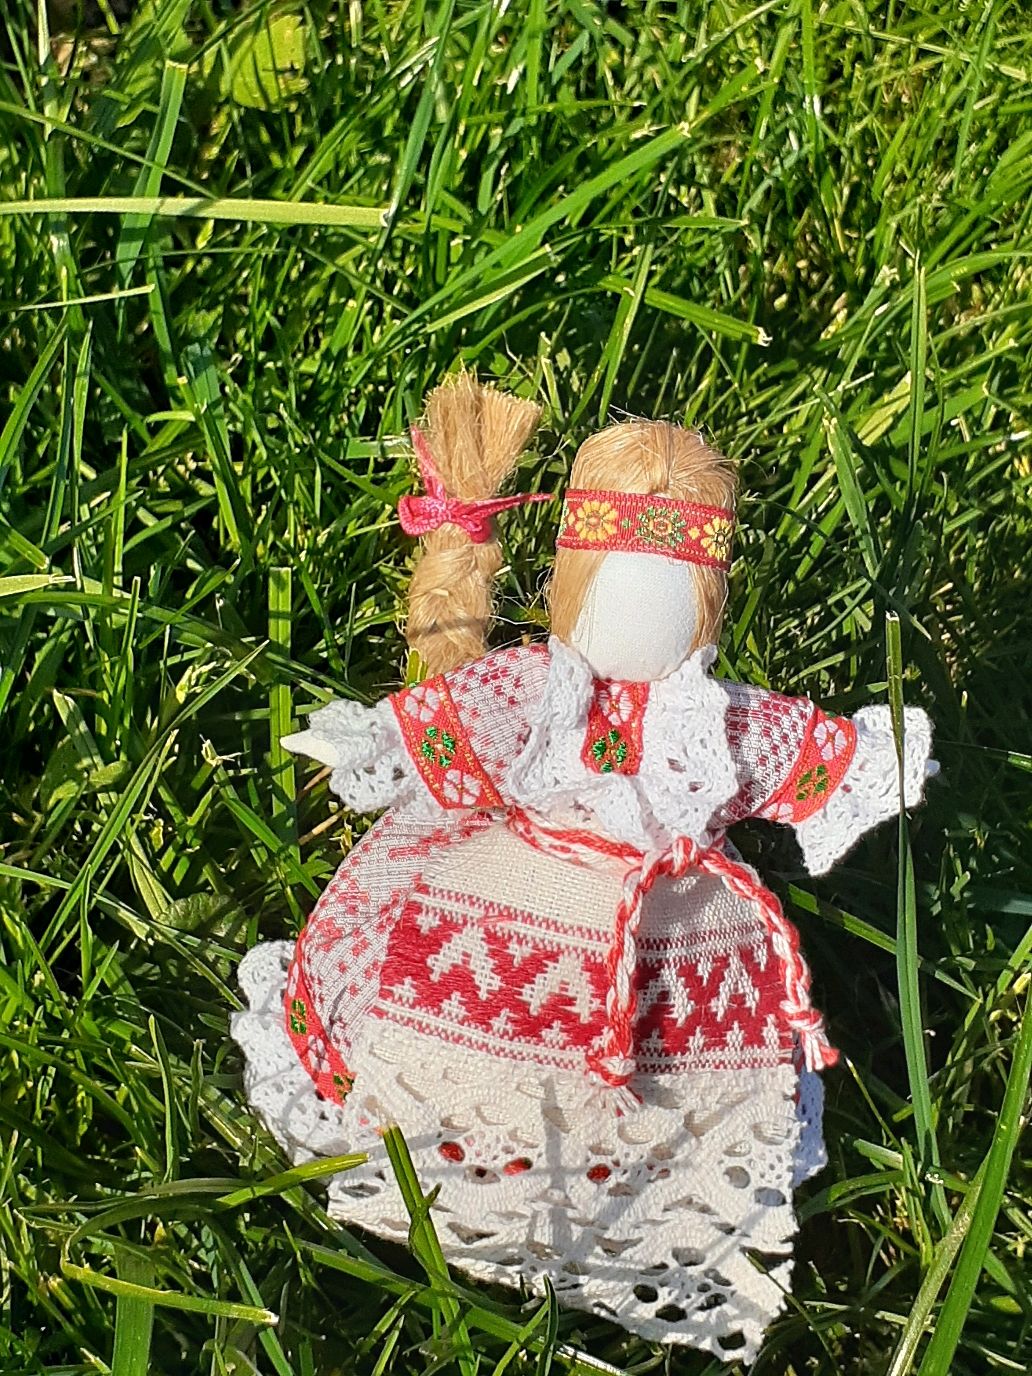 Купить куклу калуга. Кукла в Славянском стиле. Кукла на счастье. Куколки Славянский стиль. Вязанная Славянская кукла.